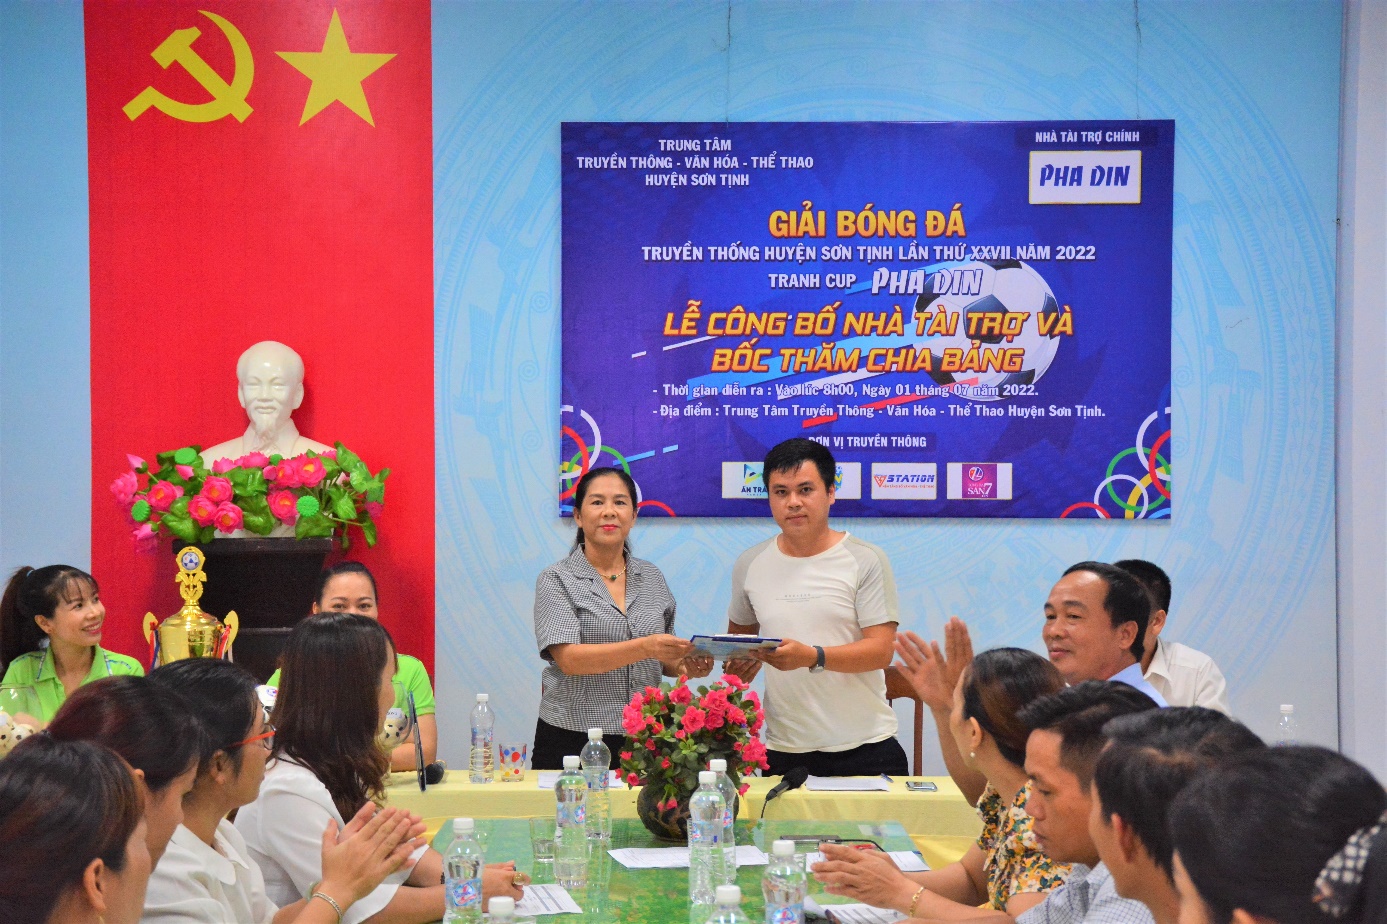 Lễ ký kết, công bố nhà tài trợ và bốc thăm chia bảng giải bóng đá Truyền thống huyện Sơn Tịnh lần thứ XXVII.